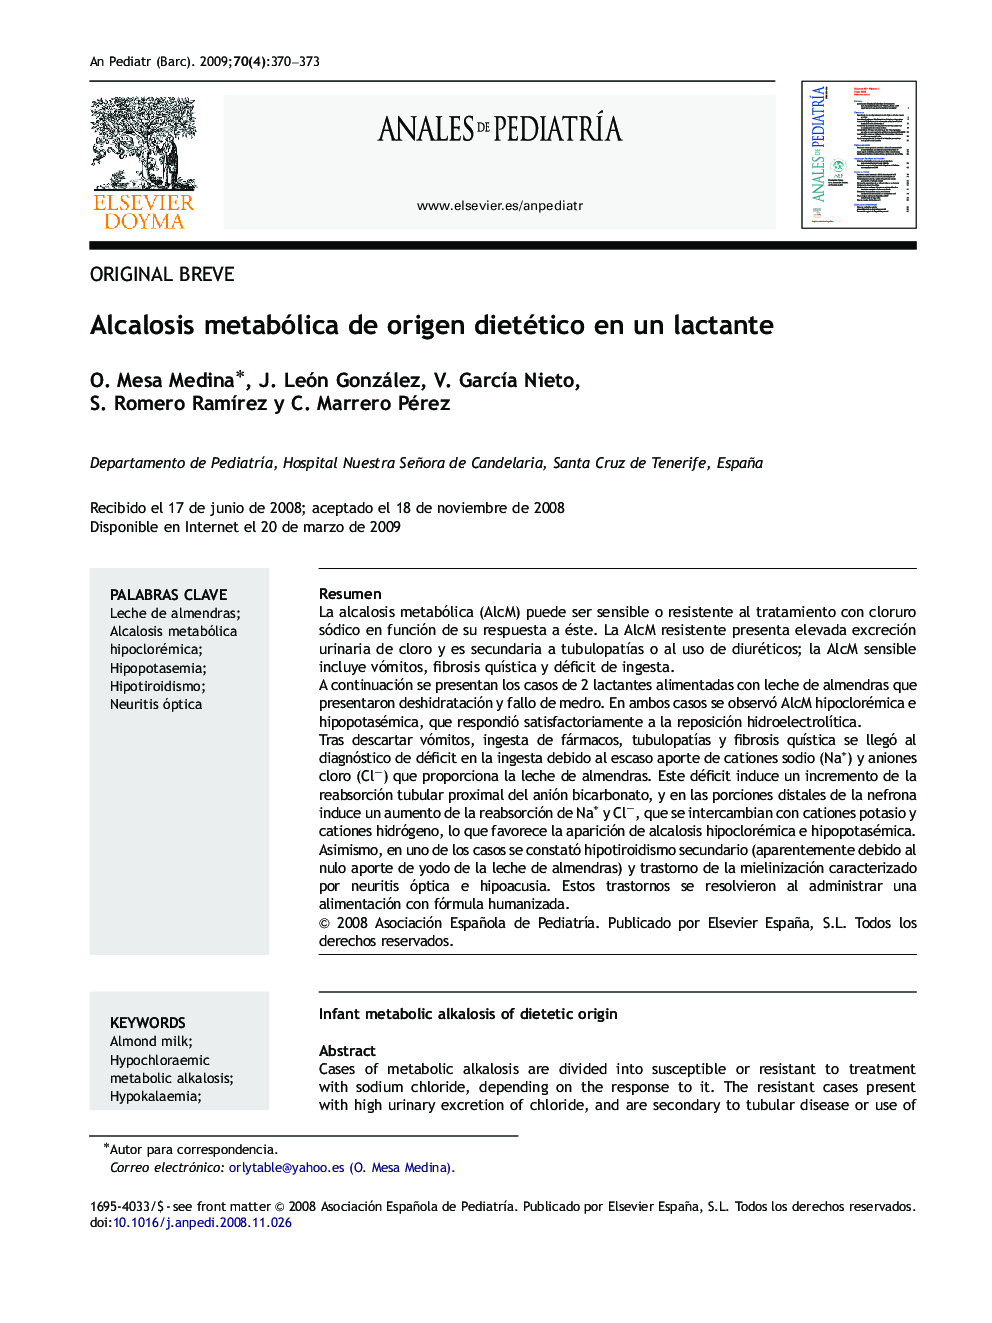 Alcalosis metabólica de origen dietético en un lactante